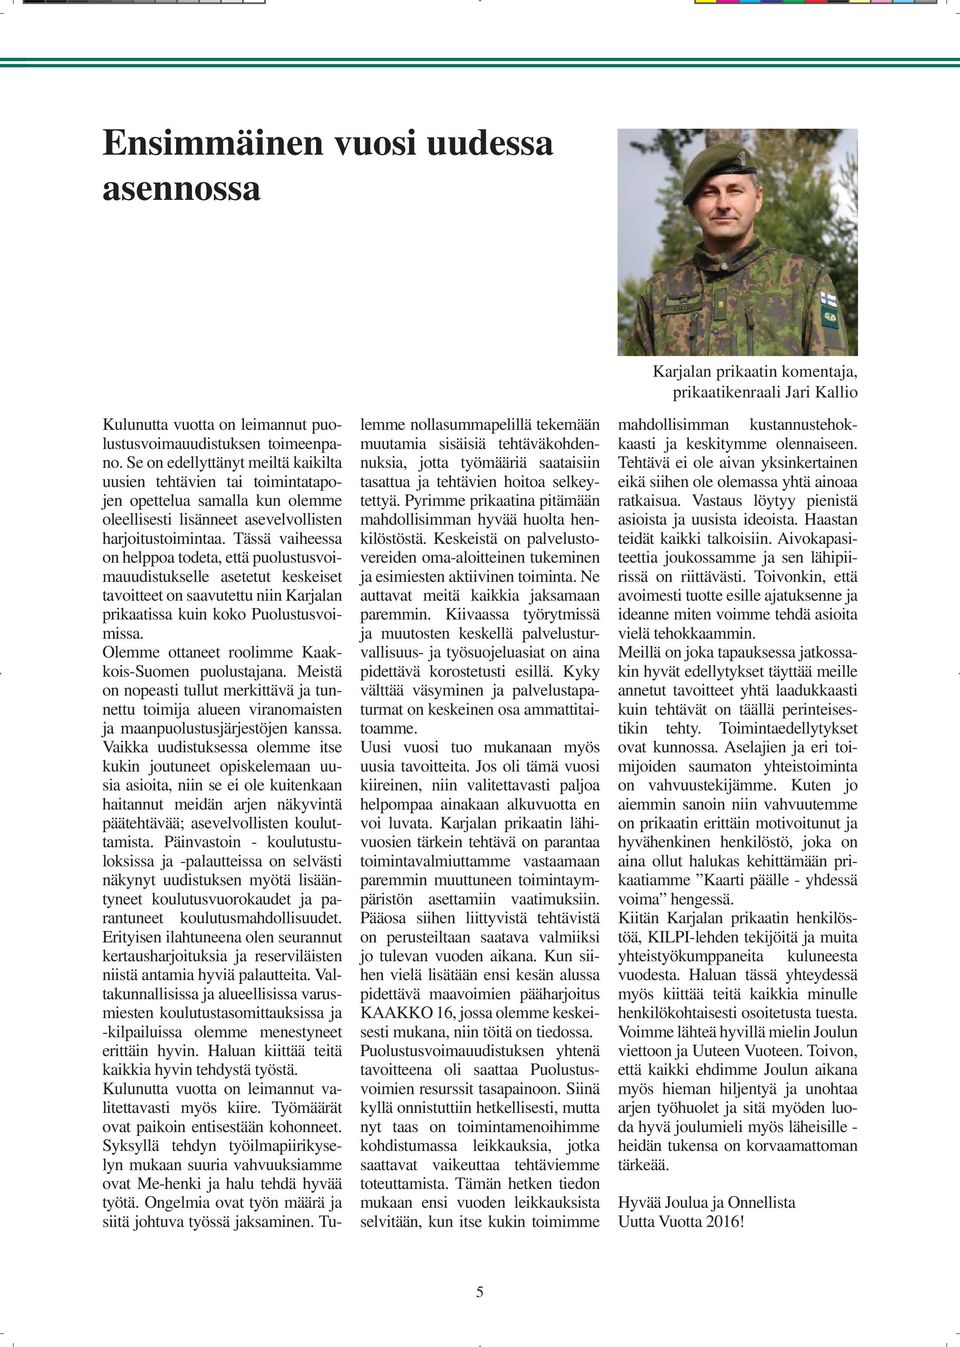 Tässä vaiheessa on helppoa todeta, että puolustusvoimauudistukselle asetetut keskeiset tavoitteet on saavutettu niin Karjalan prikaatissa kuin koko Puolustusvoimissa.